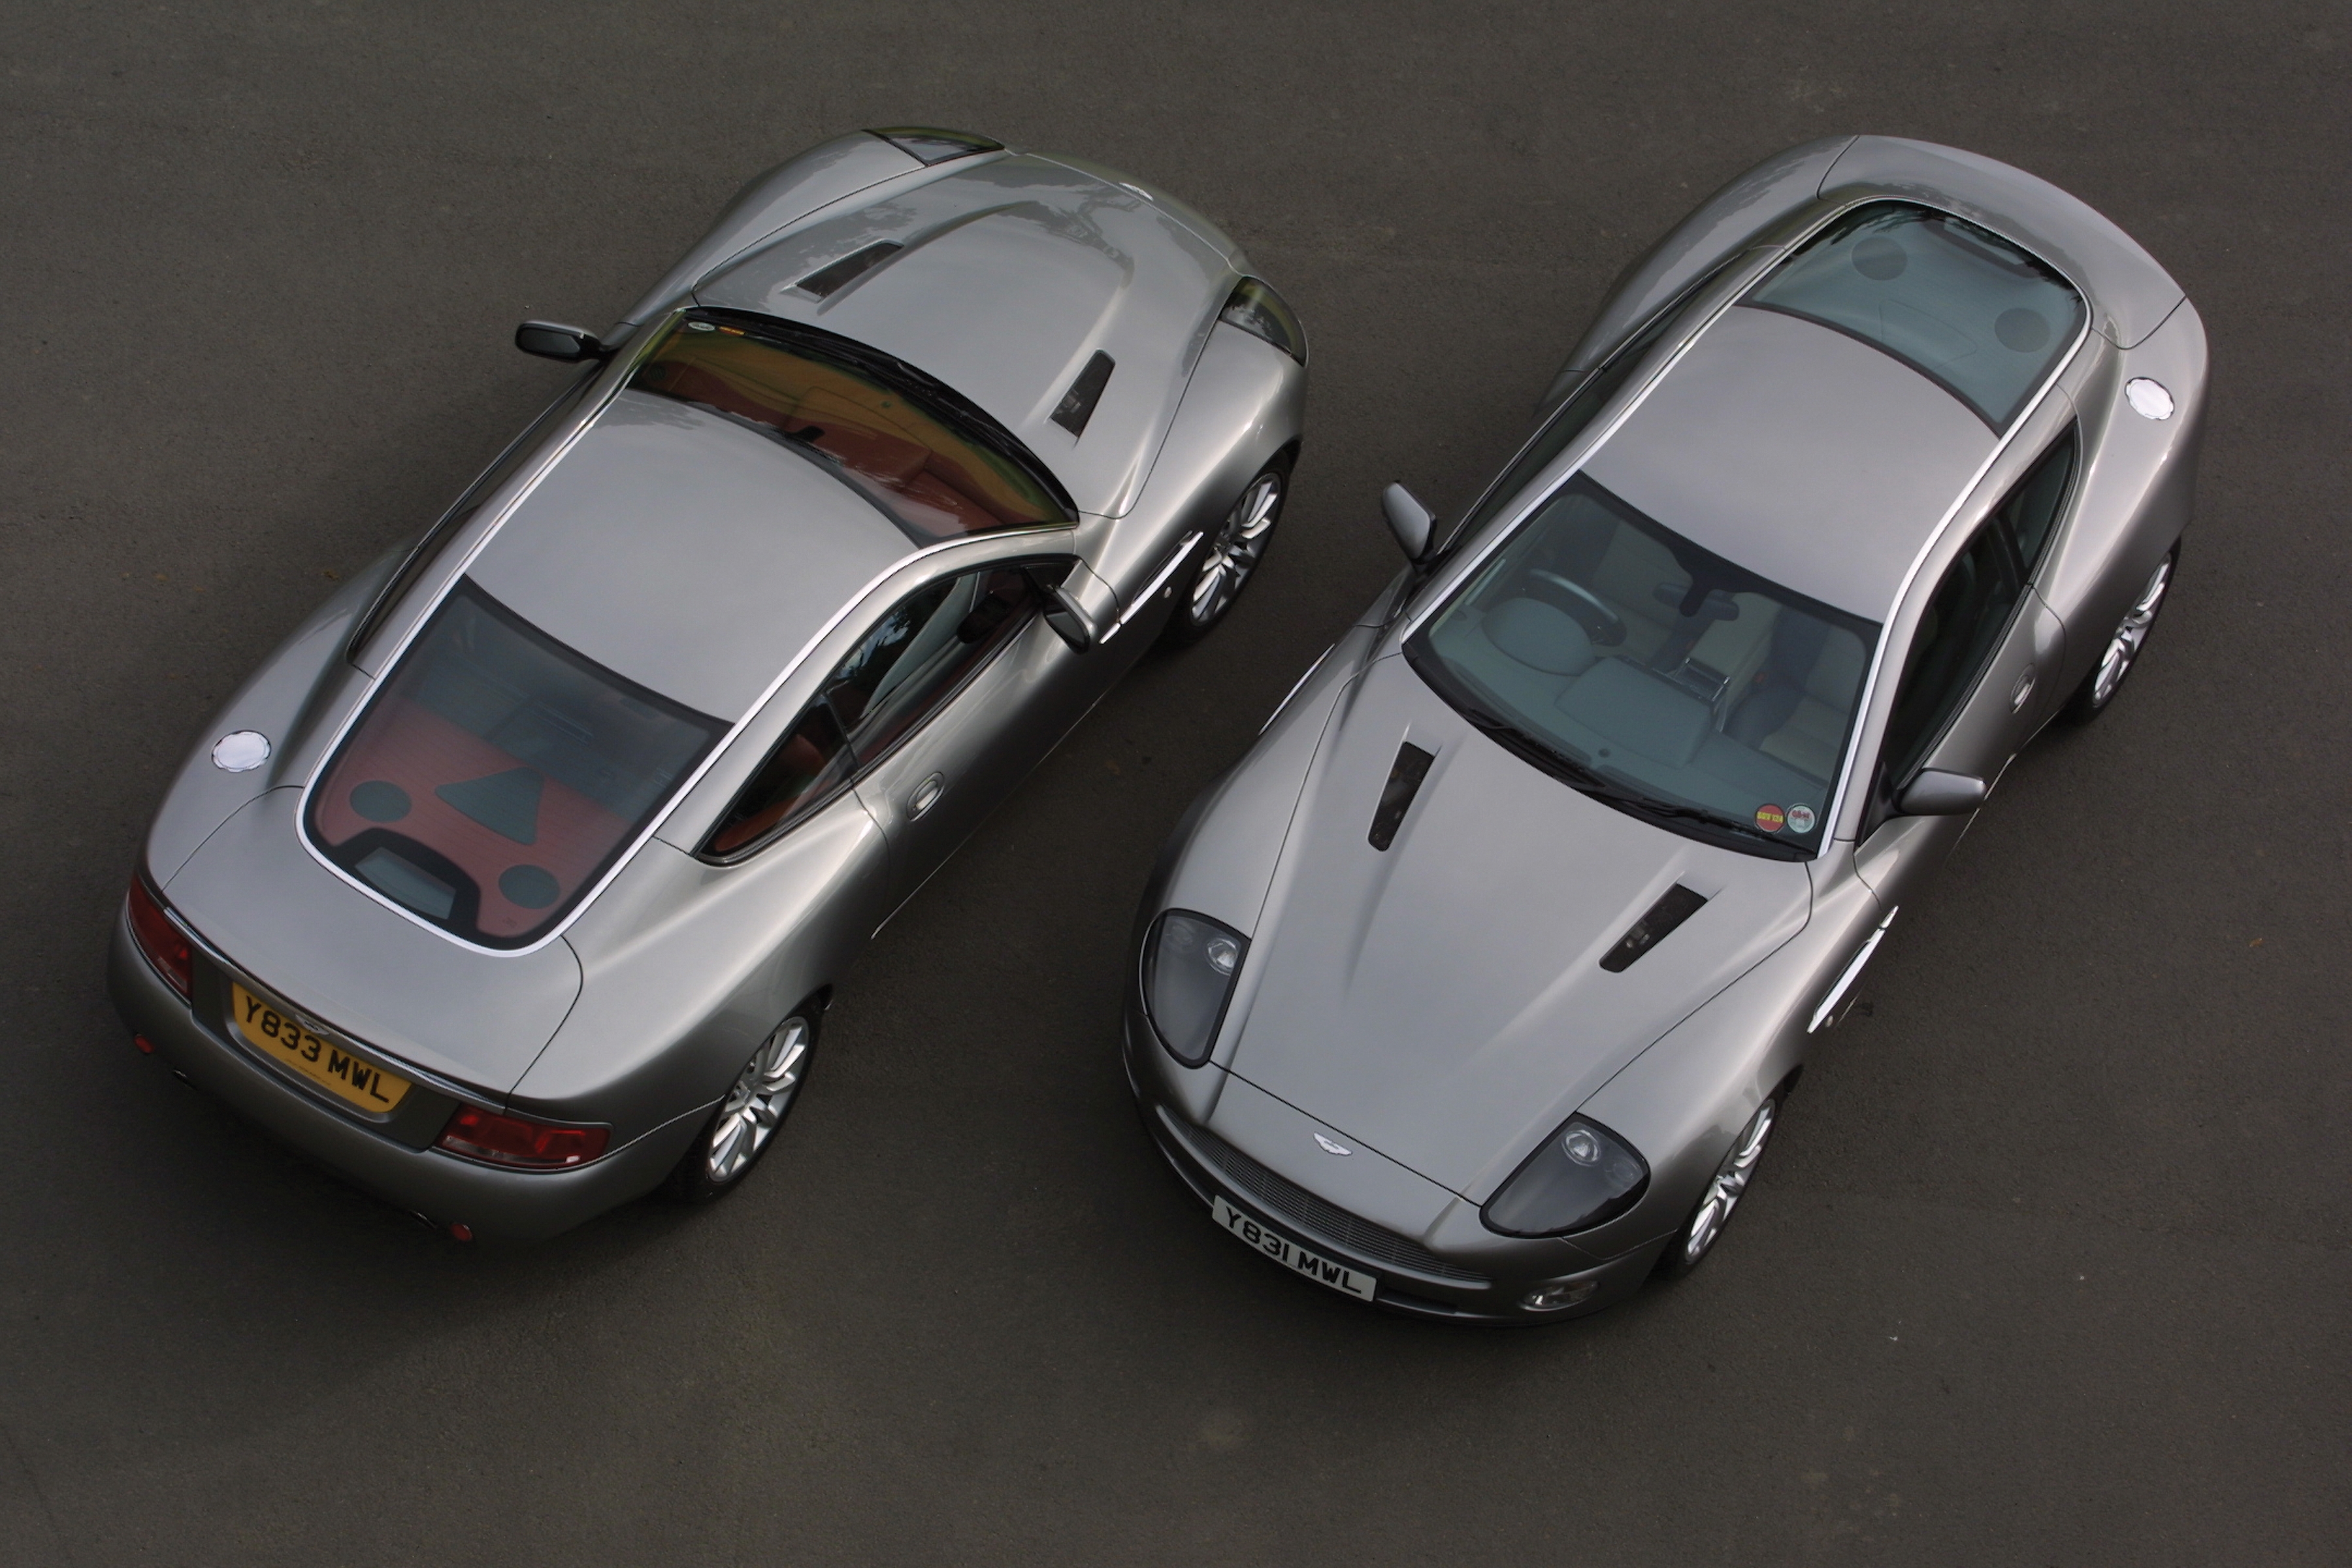 автомобили, Aston Martin V12 Vanquish, вид сверху - обои на рабочий стол